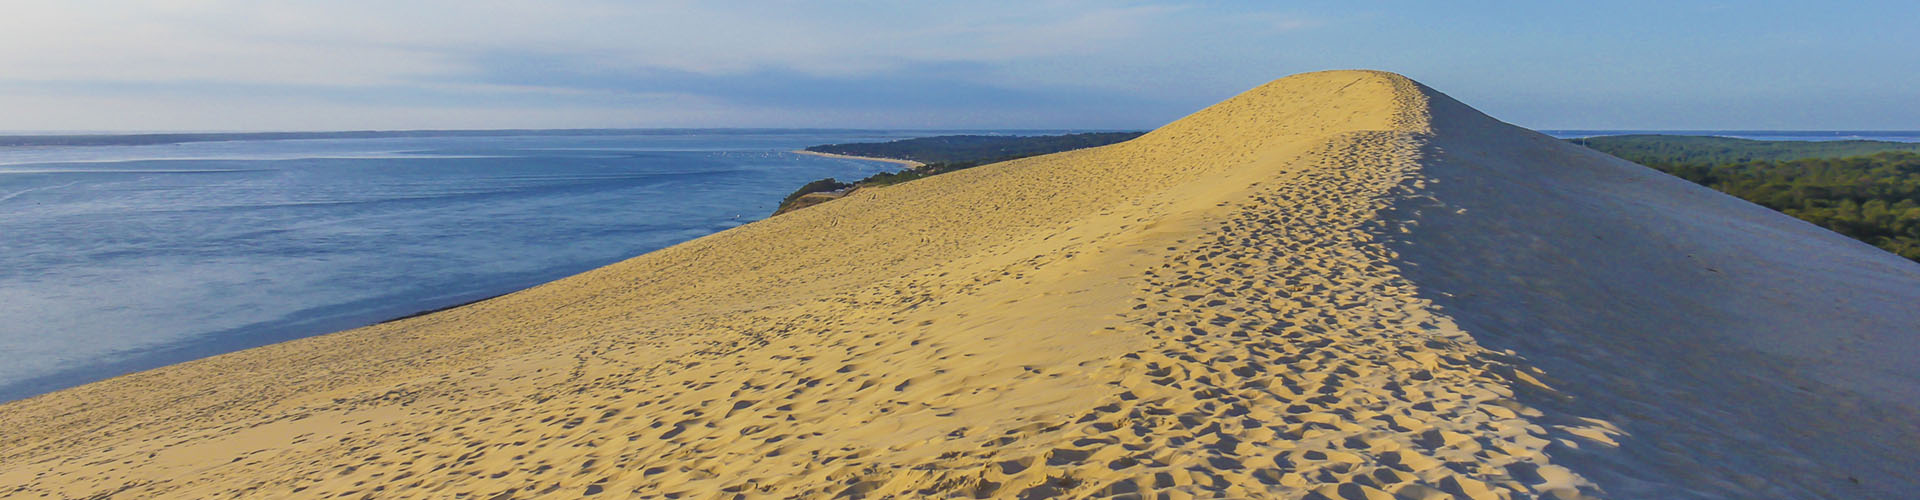 De Dune du Pilat aan de Baai van Arcachon